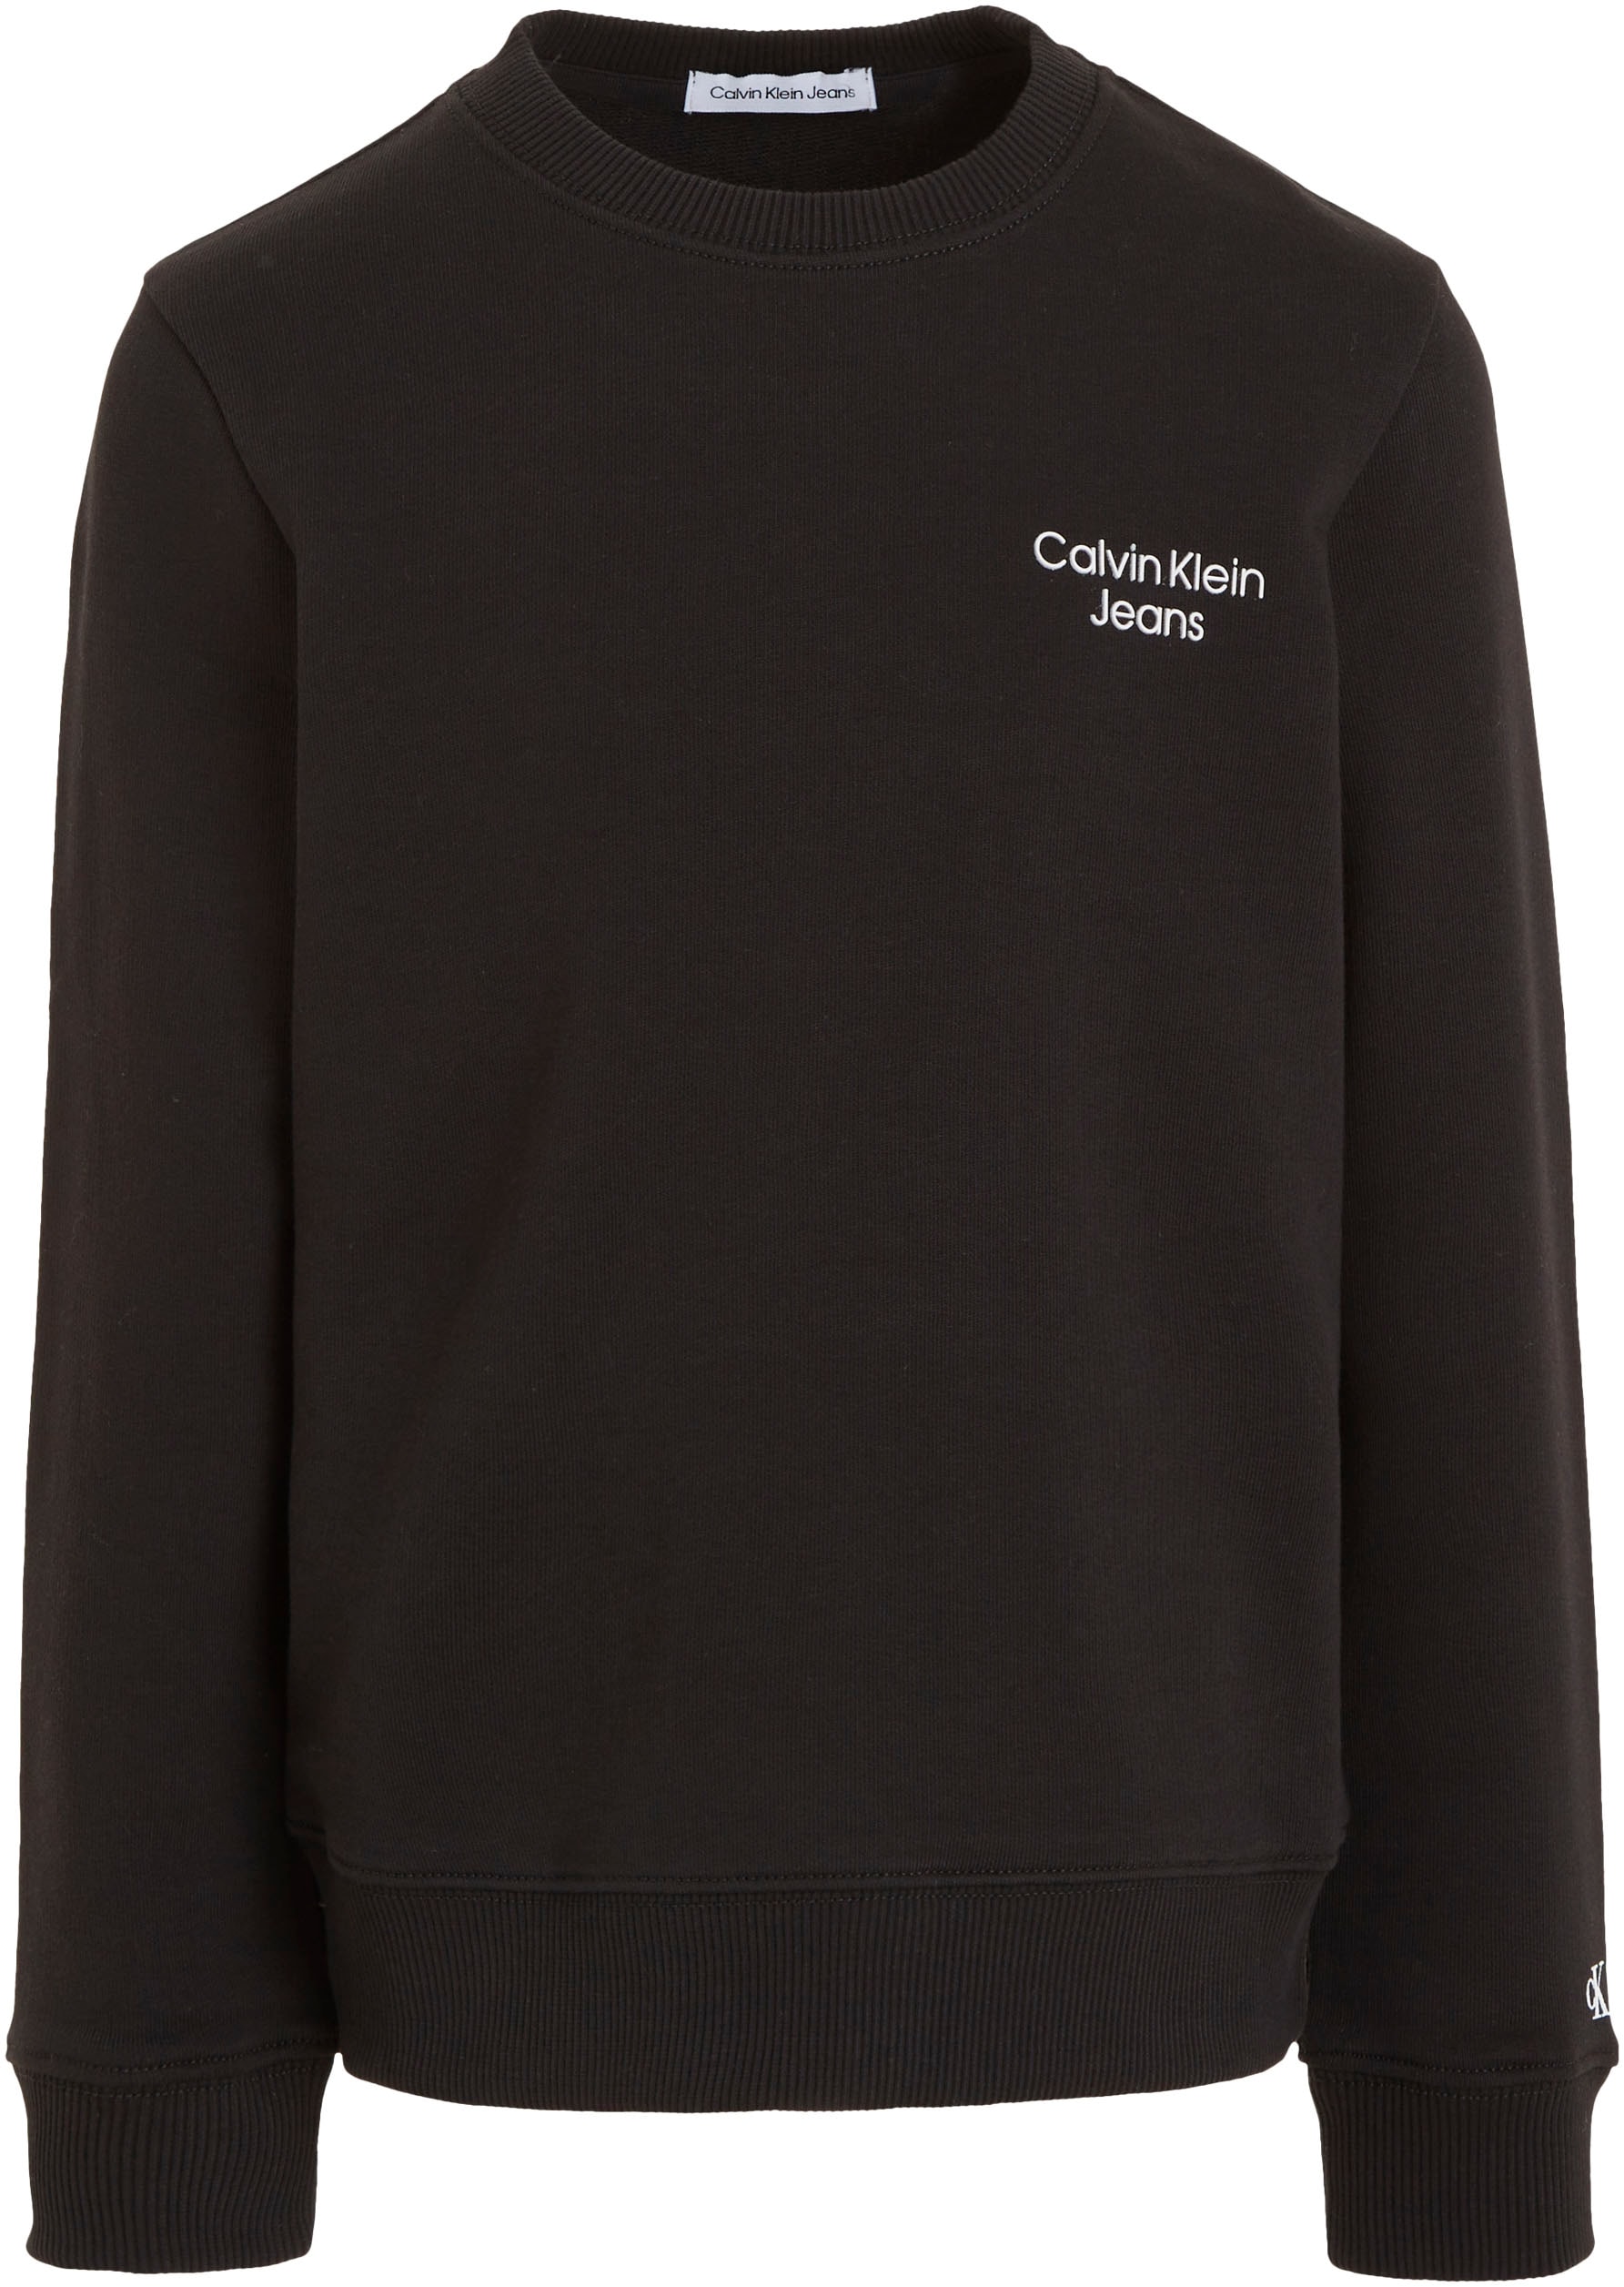 Verkaufsanzeige Calvin Klein Jeans Sweatshirt »CKJ bei SWEATSHIRT« LOGO OTTO STACK